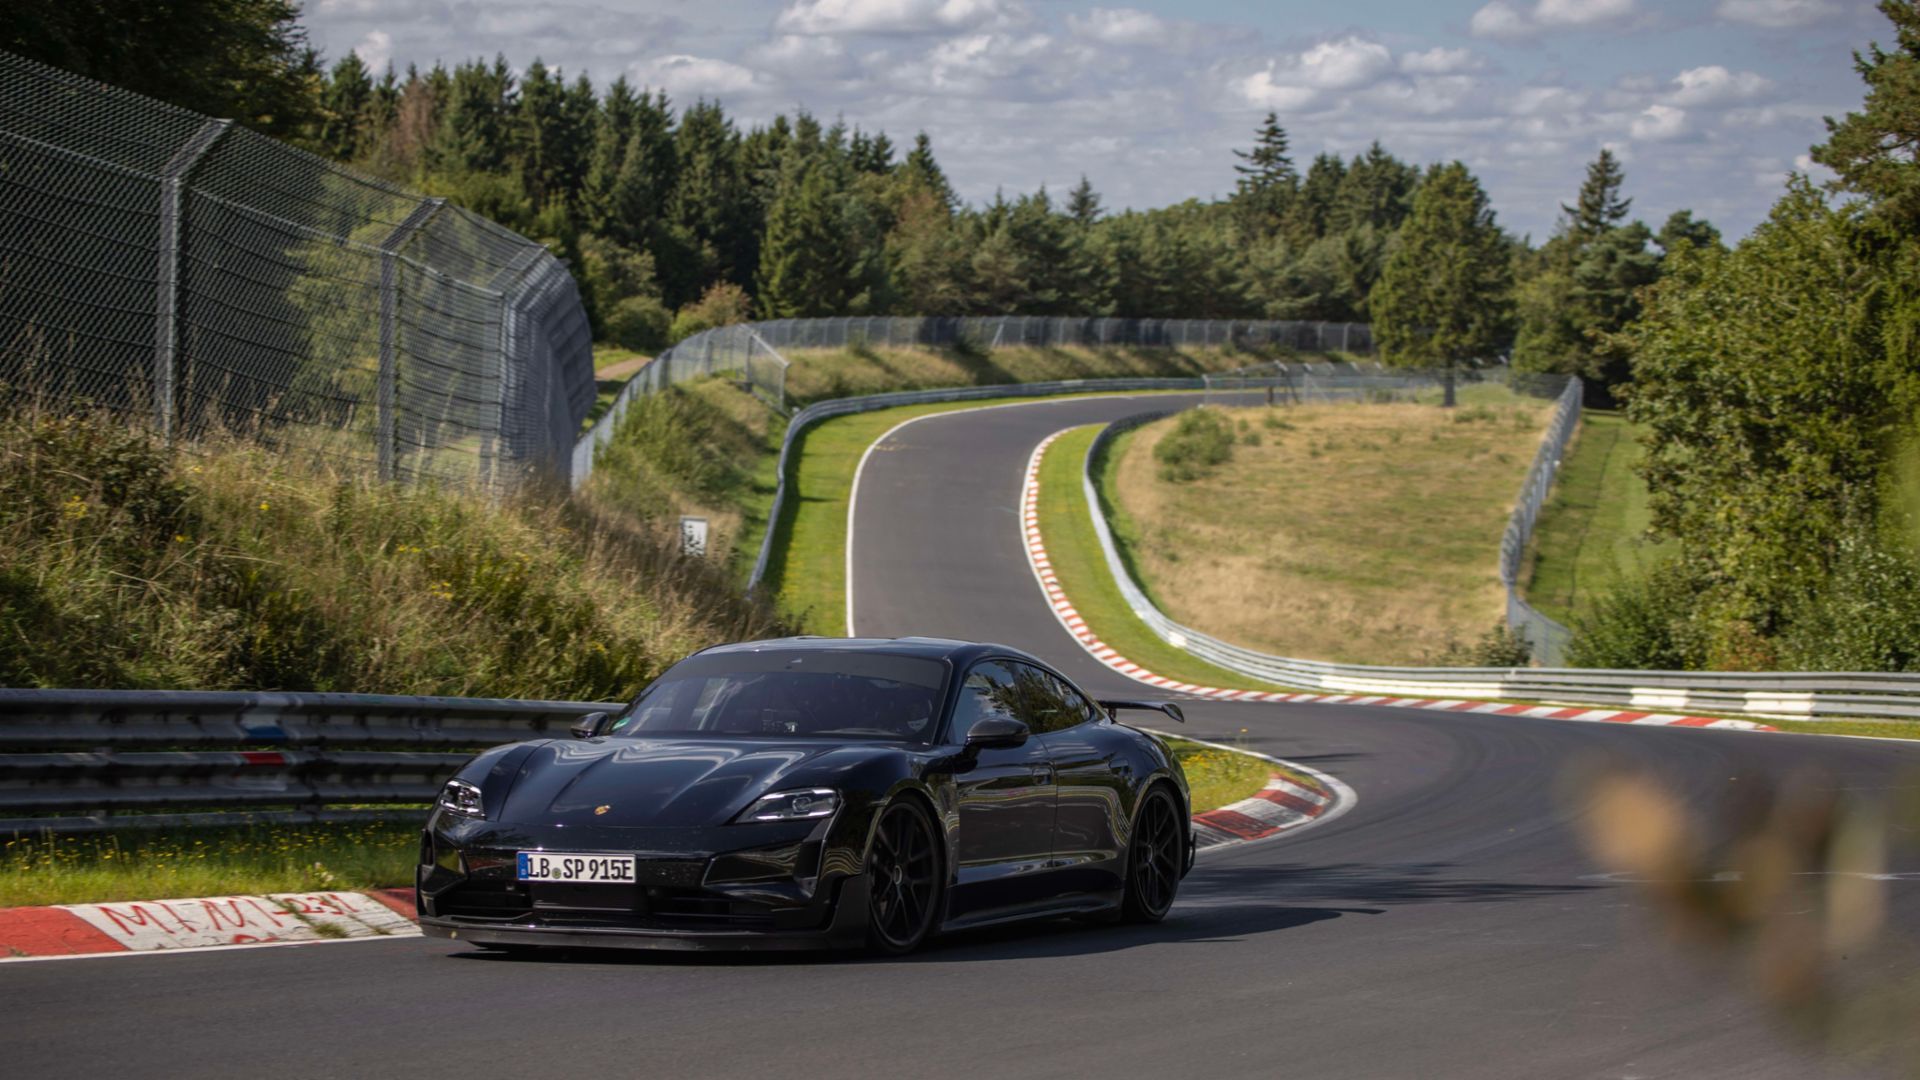 18 seconden sneller dan de Tesla Model S Plaid: Porsche testte de Taycan Turbo GT elektrische sportwagen op de Nürburgring